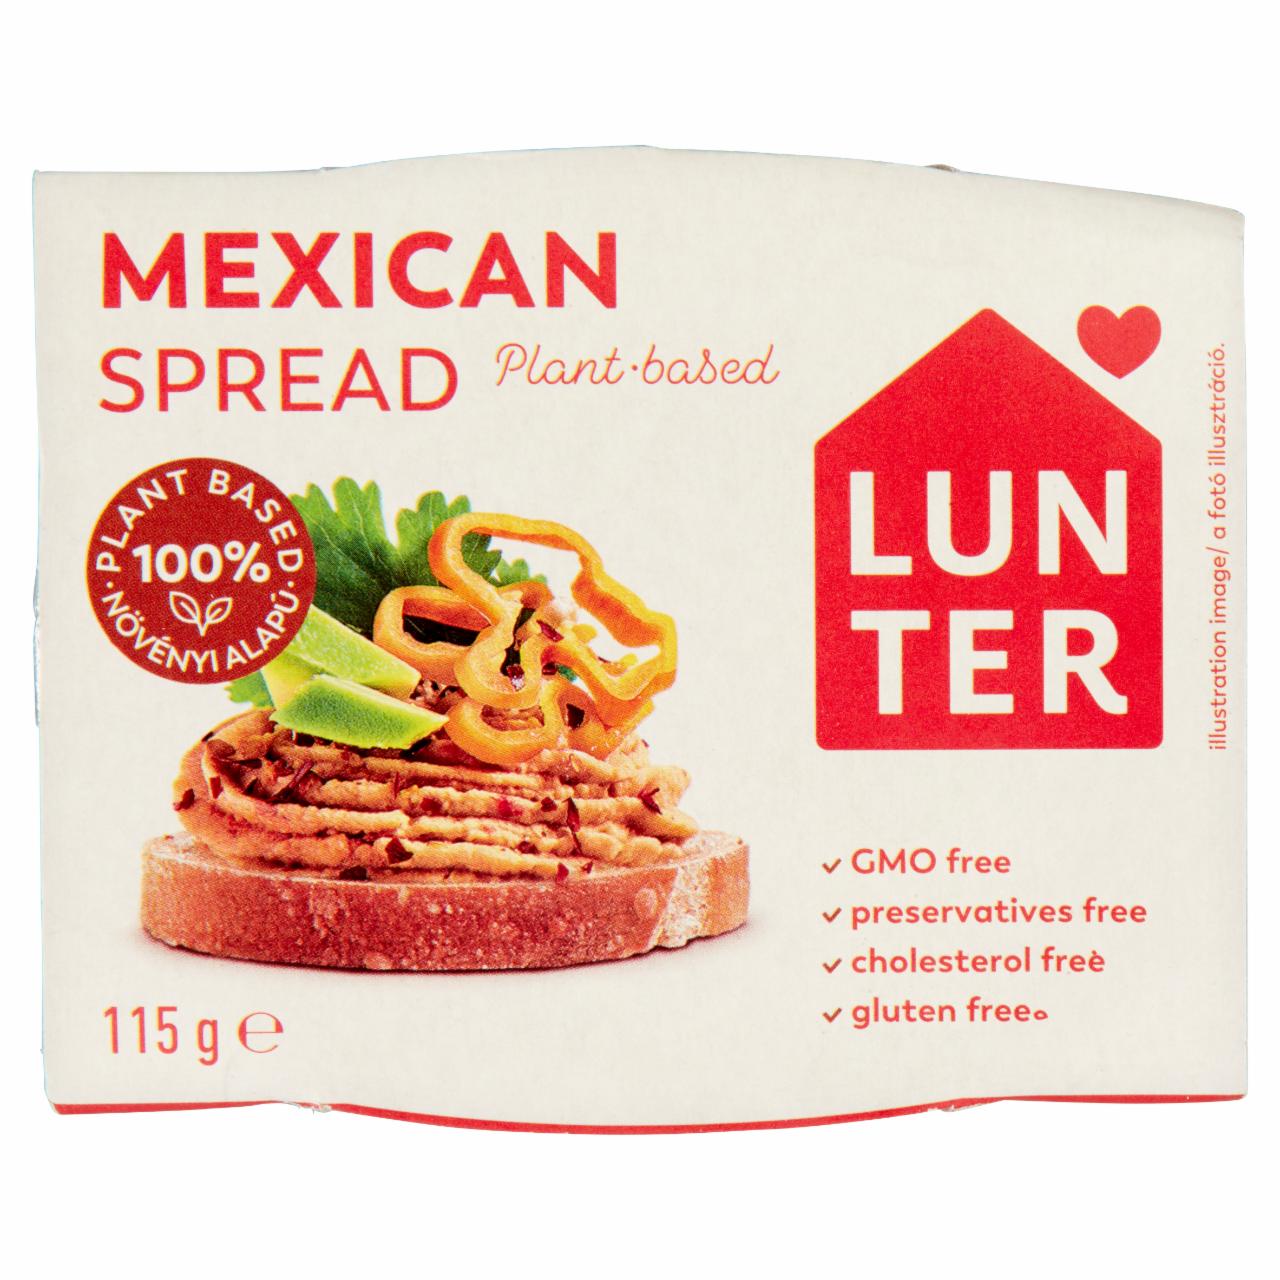 Képek - Lunter mexikói vegán szendvicskrém 115 g